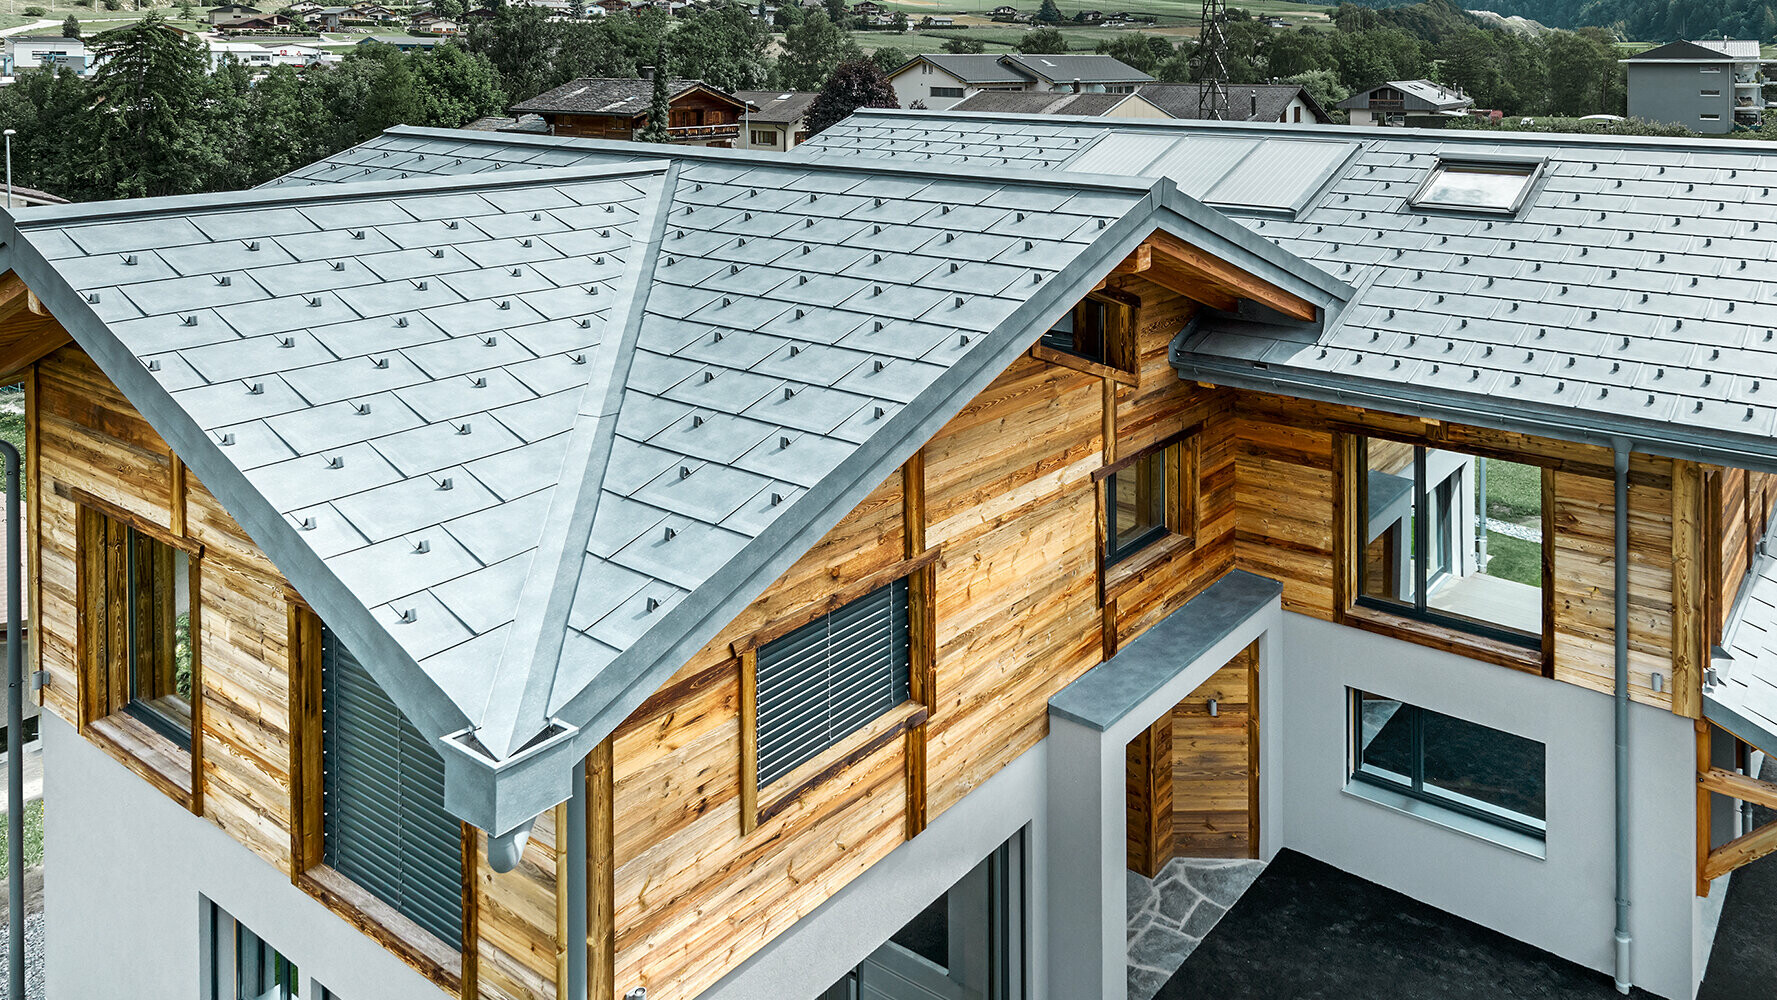 Chalet mit PREFA Dacheindeckung in P.10 Steingrau in Kombination mit einer Holzfassade